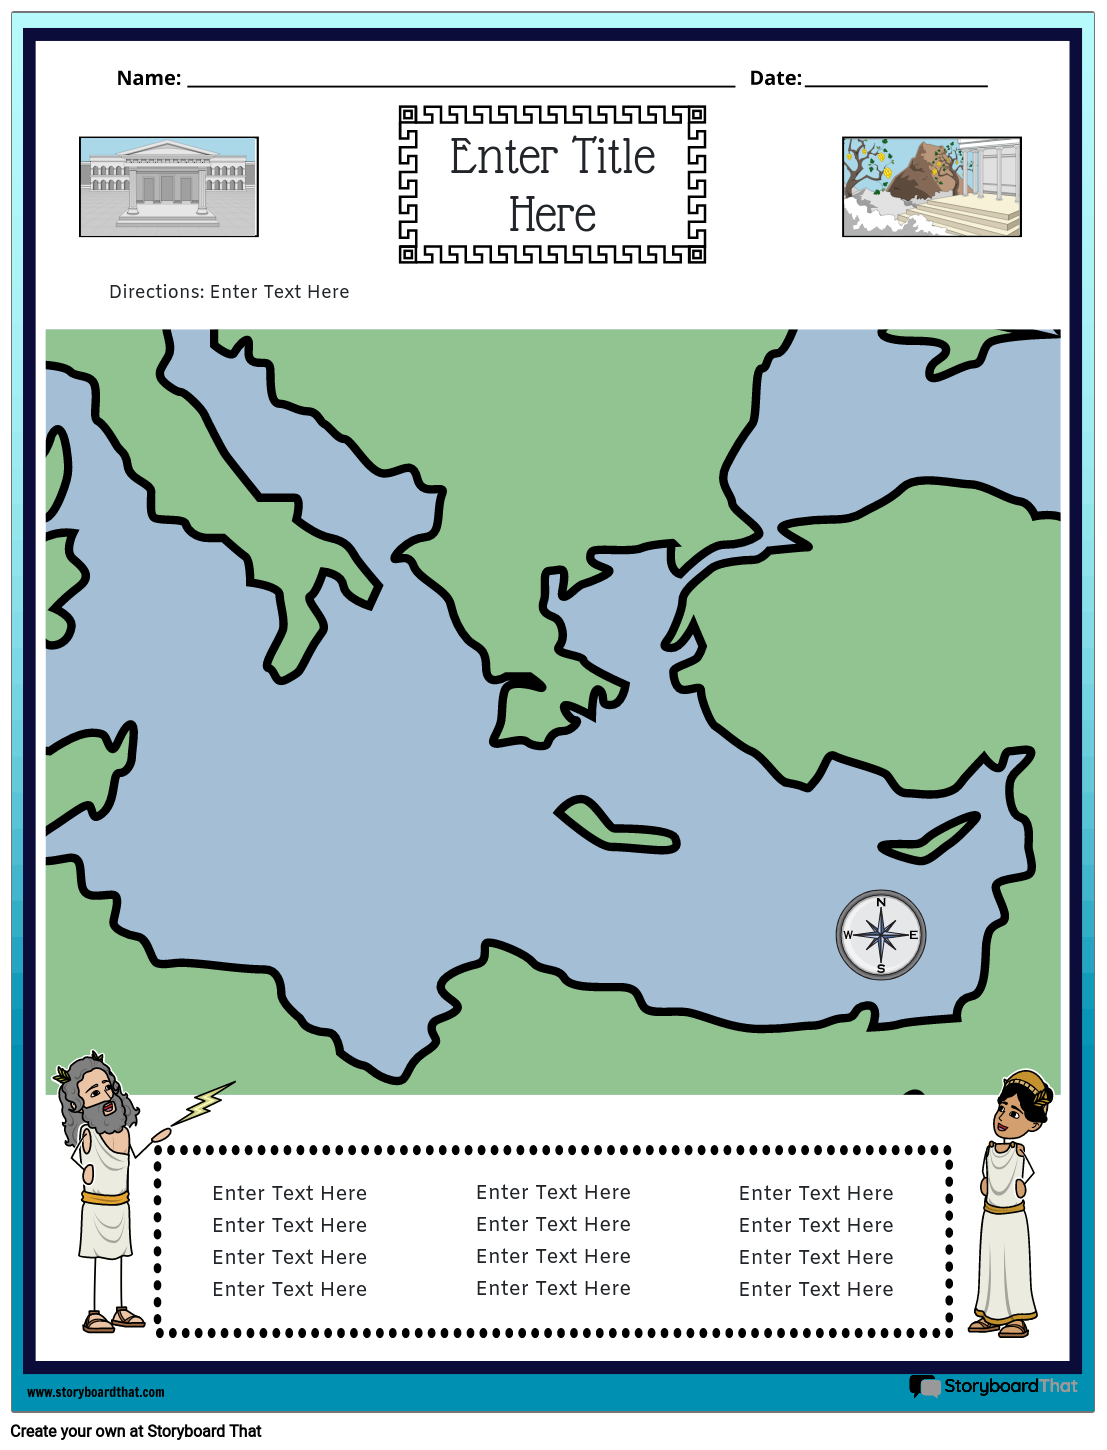 מפת יוון העתיקה